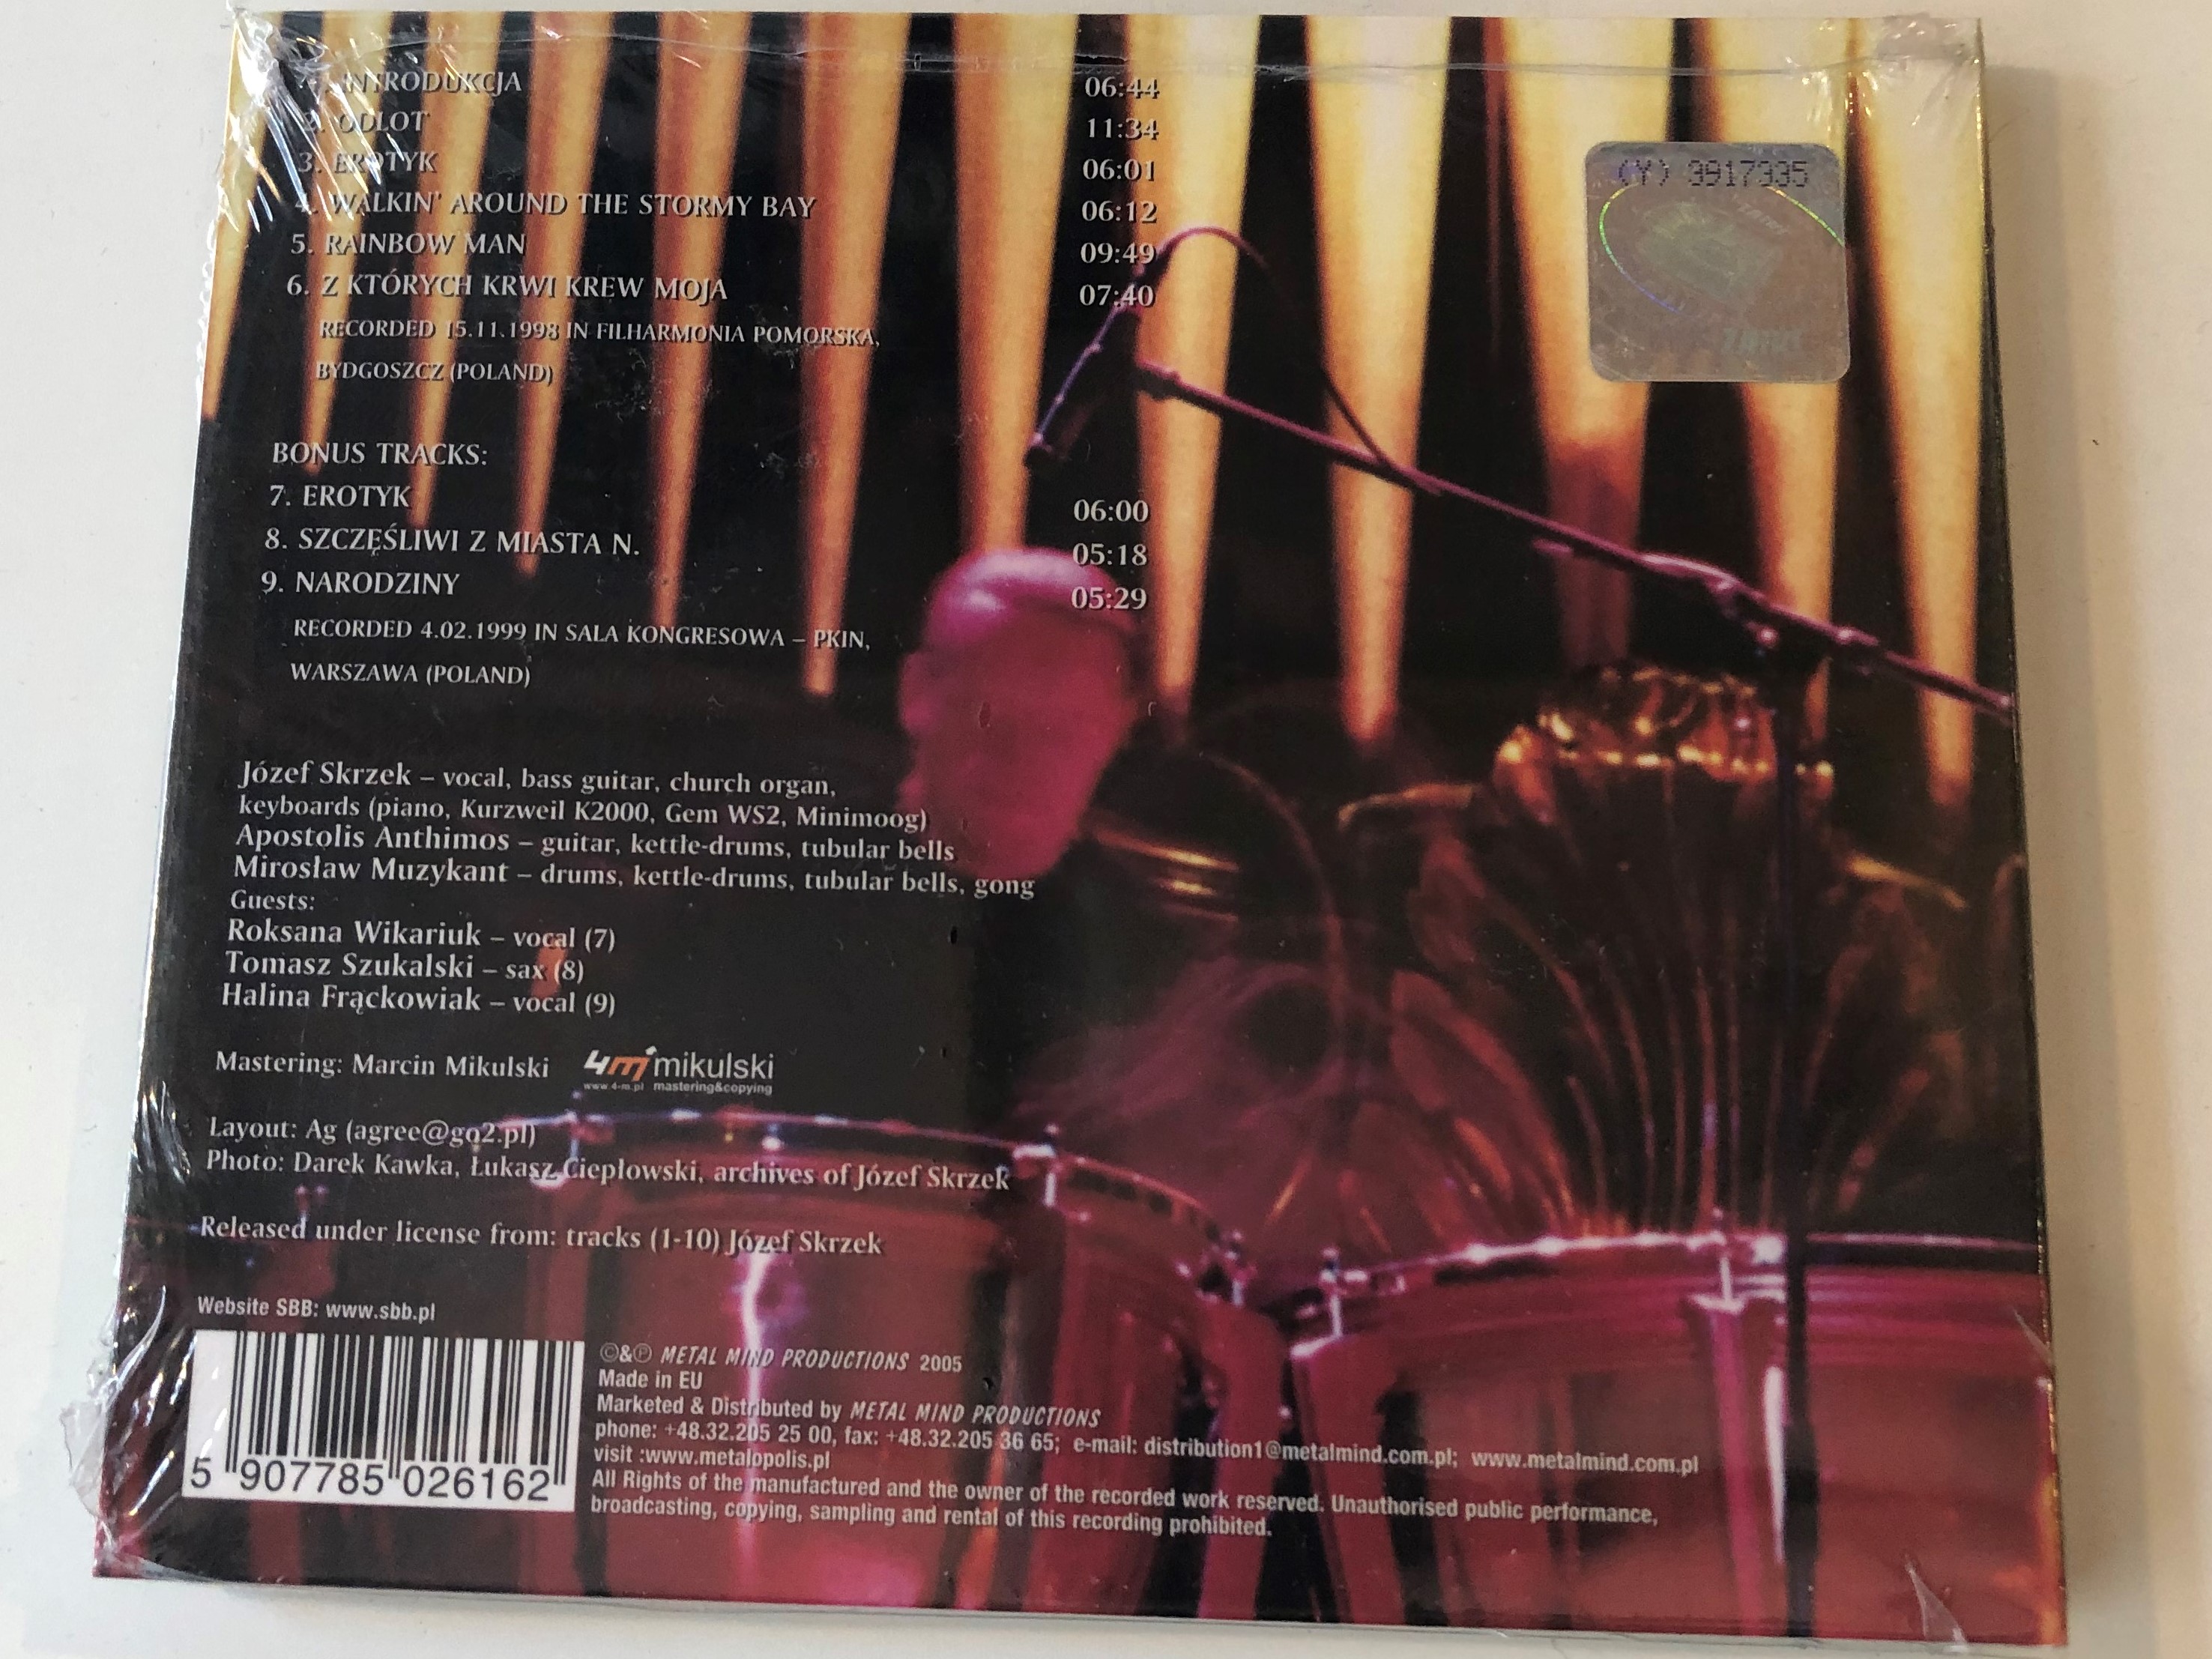 sbb-w-filharmonii-akt-1-metal-mind-productions-audio-cd-2005-5907785026162-2-.jpg